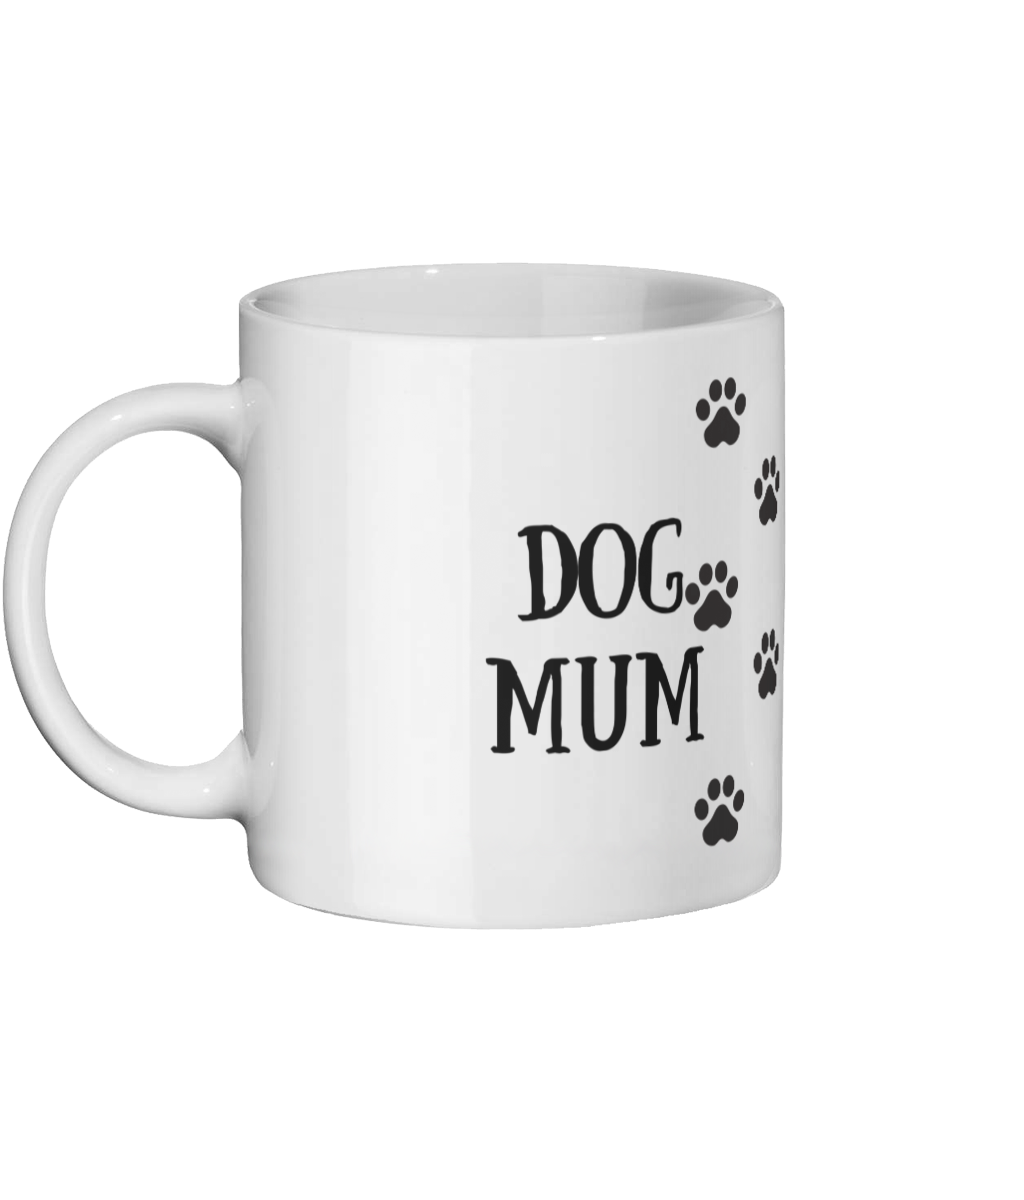 Dog Mum Mug Left-side